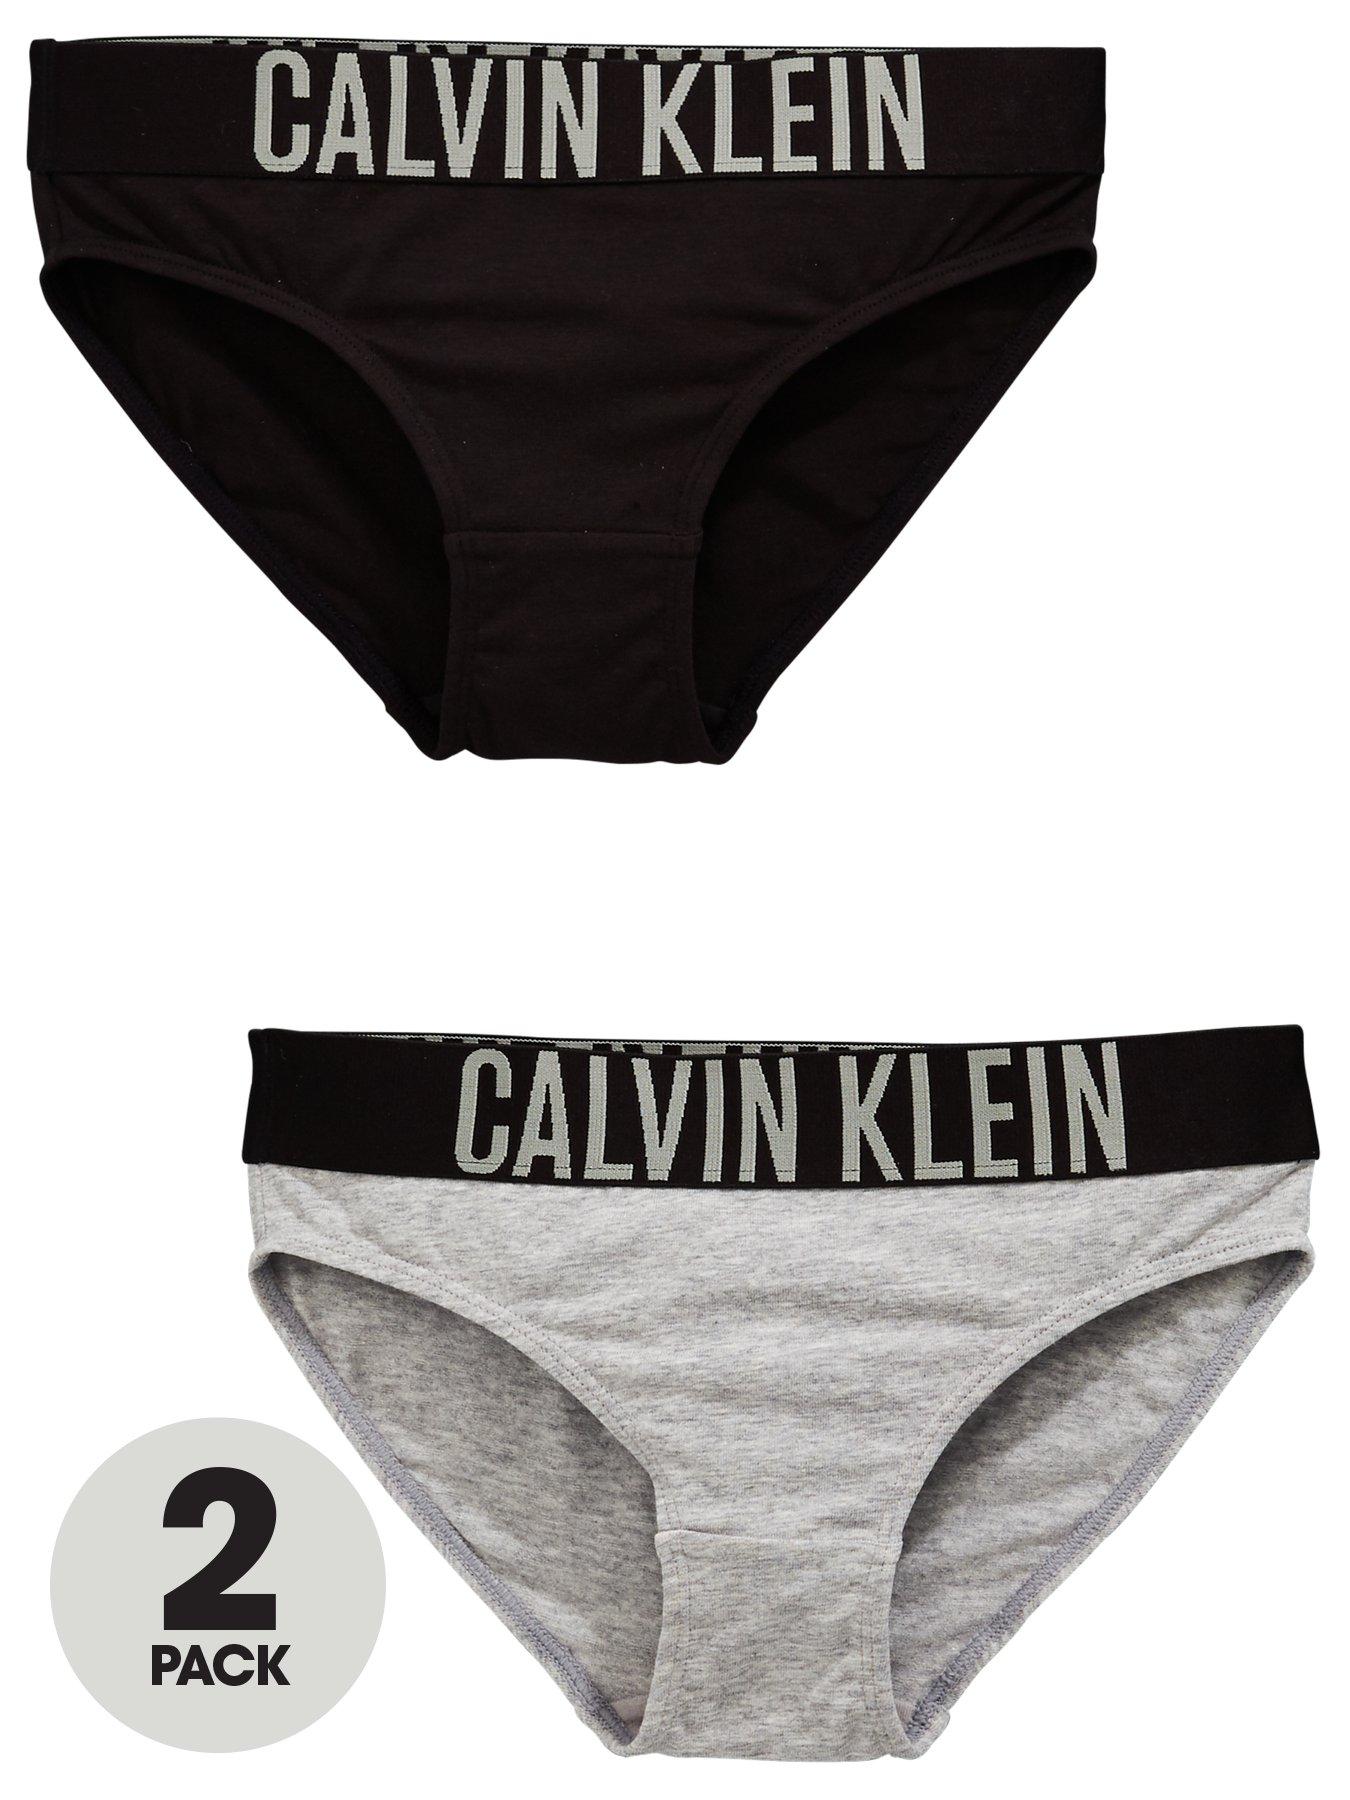 Bras & Crop Tops, Calvin klein, Underwear & socks, Girls clothes, Child  & baby